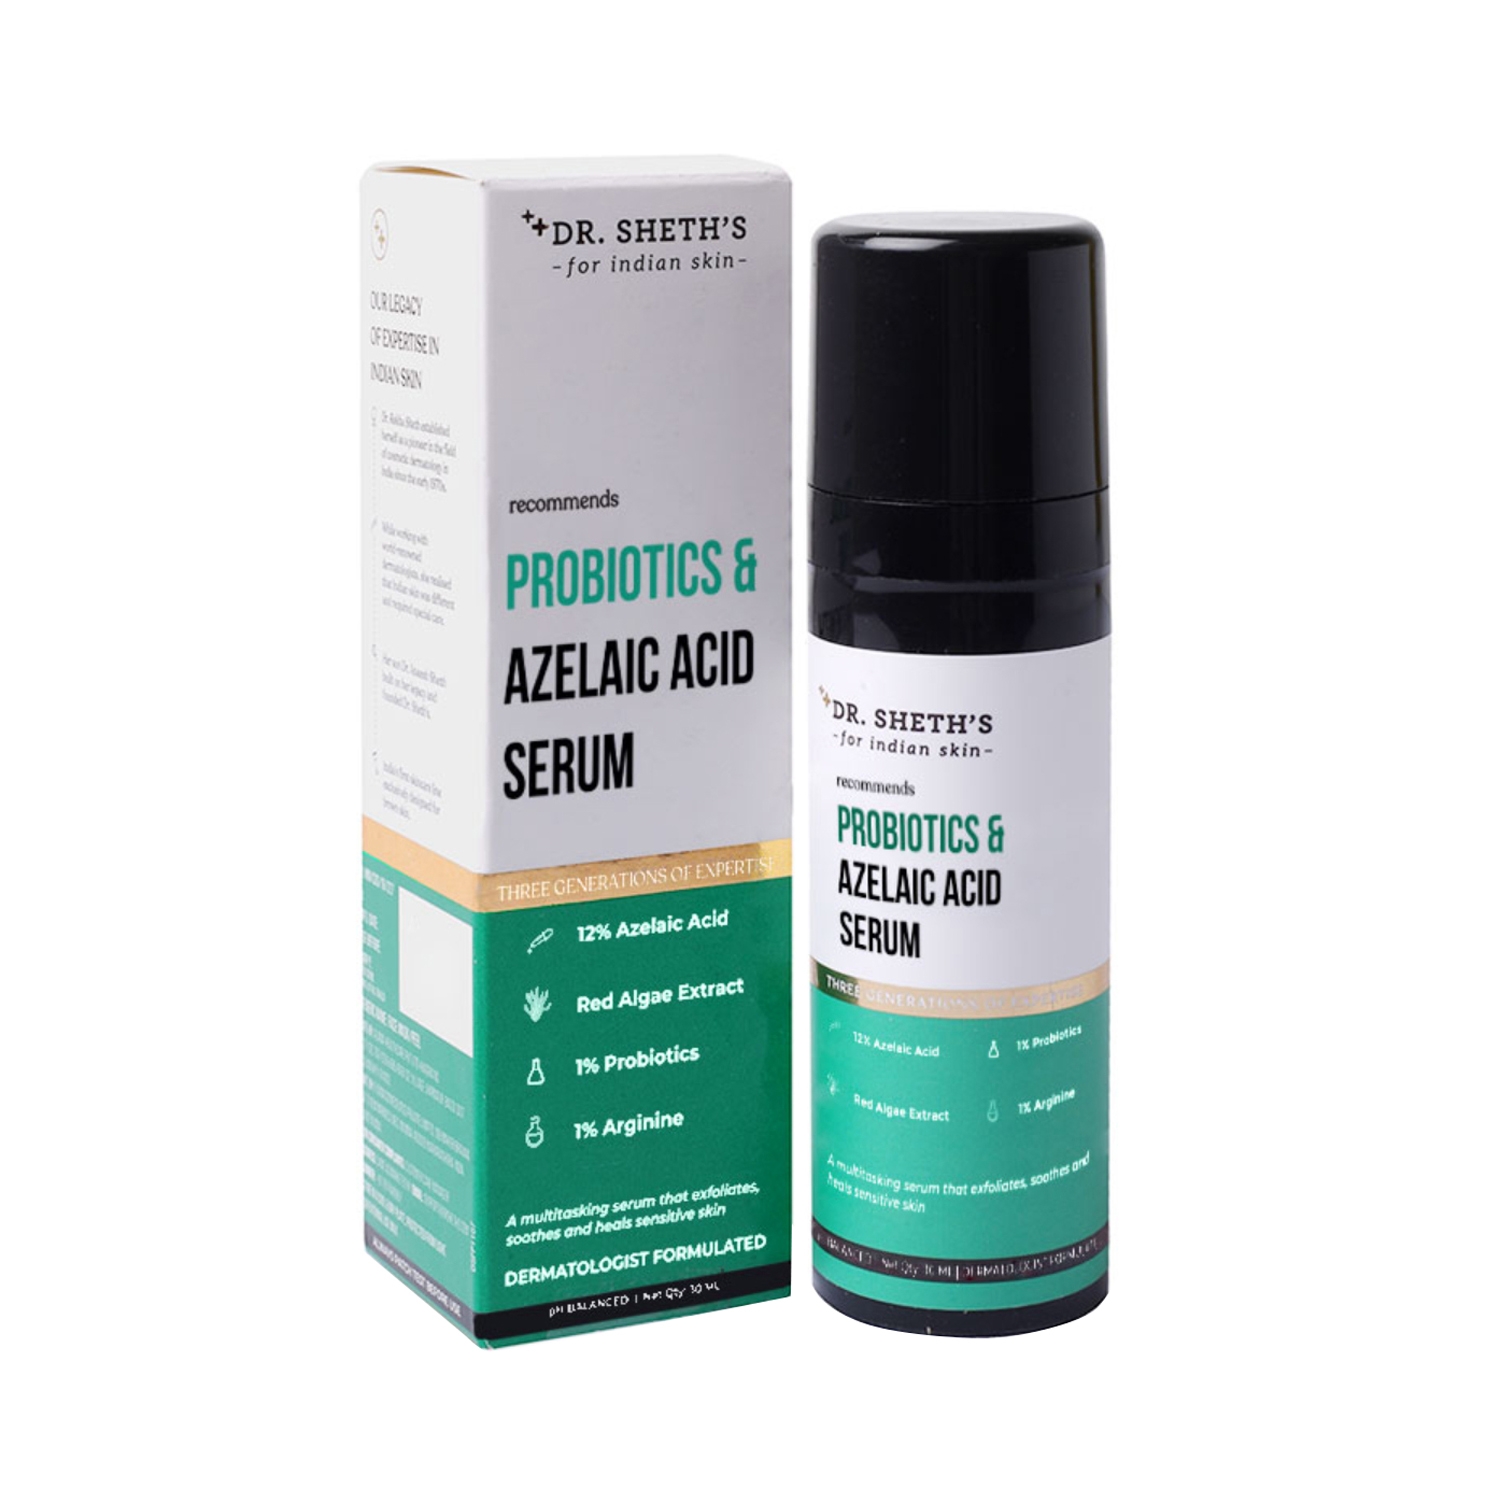 Dr. Sheth's Probiotics & Azelaic Acid Serum (30ml)